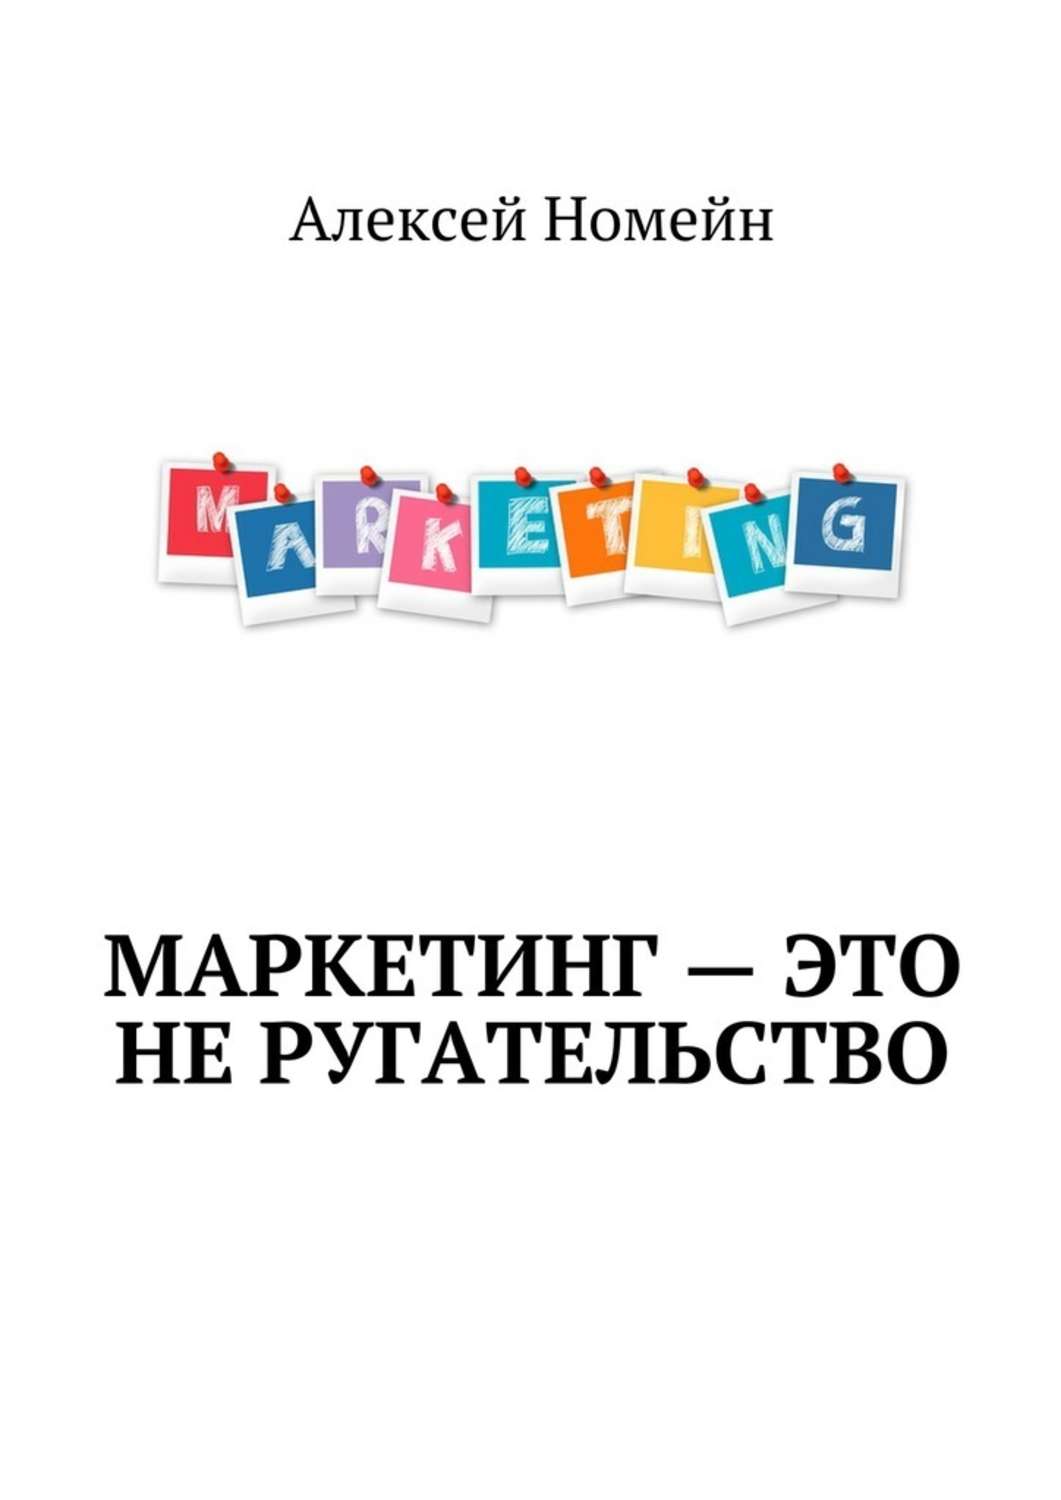 Издательство маркетинг москва